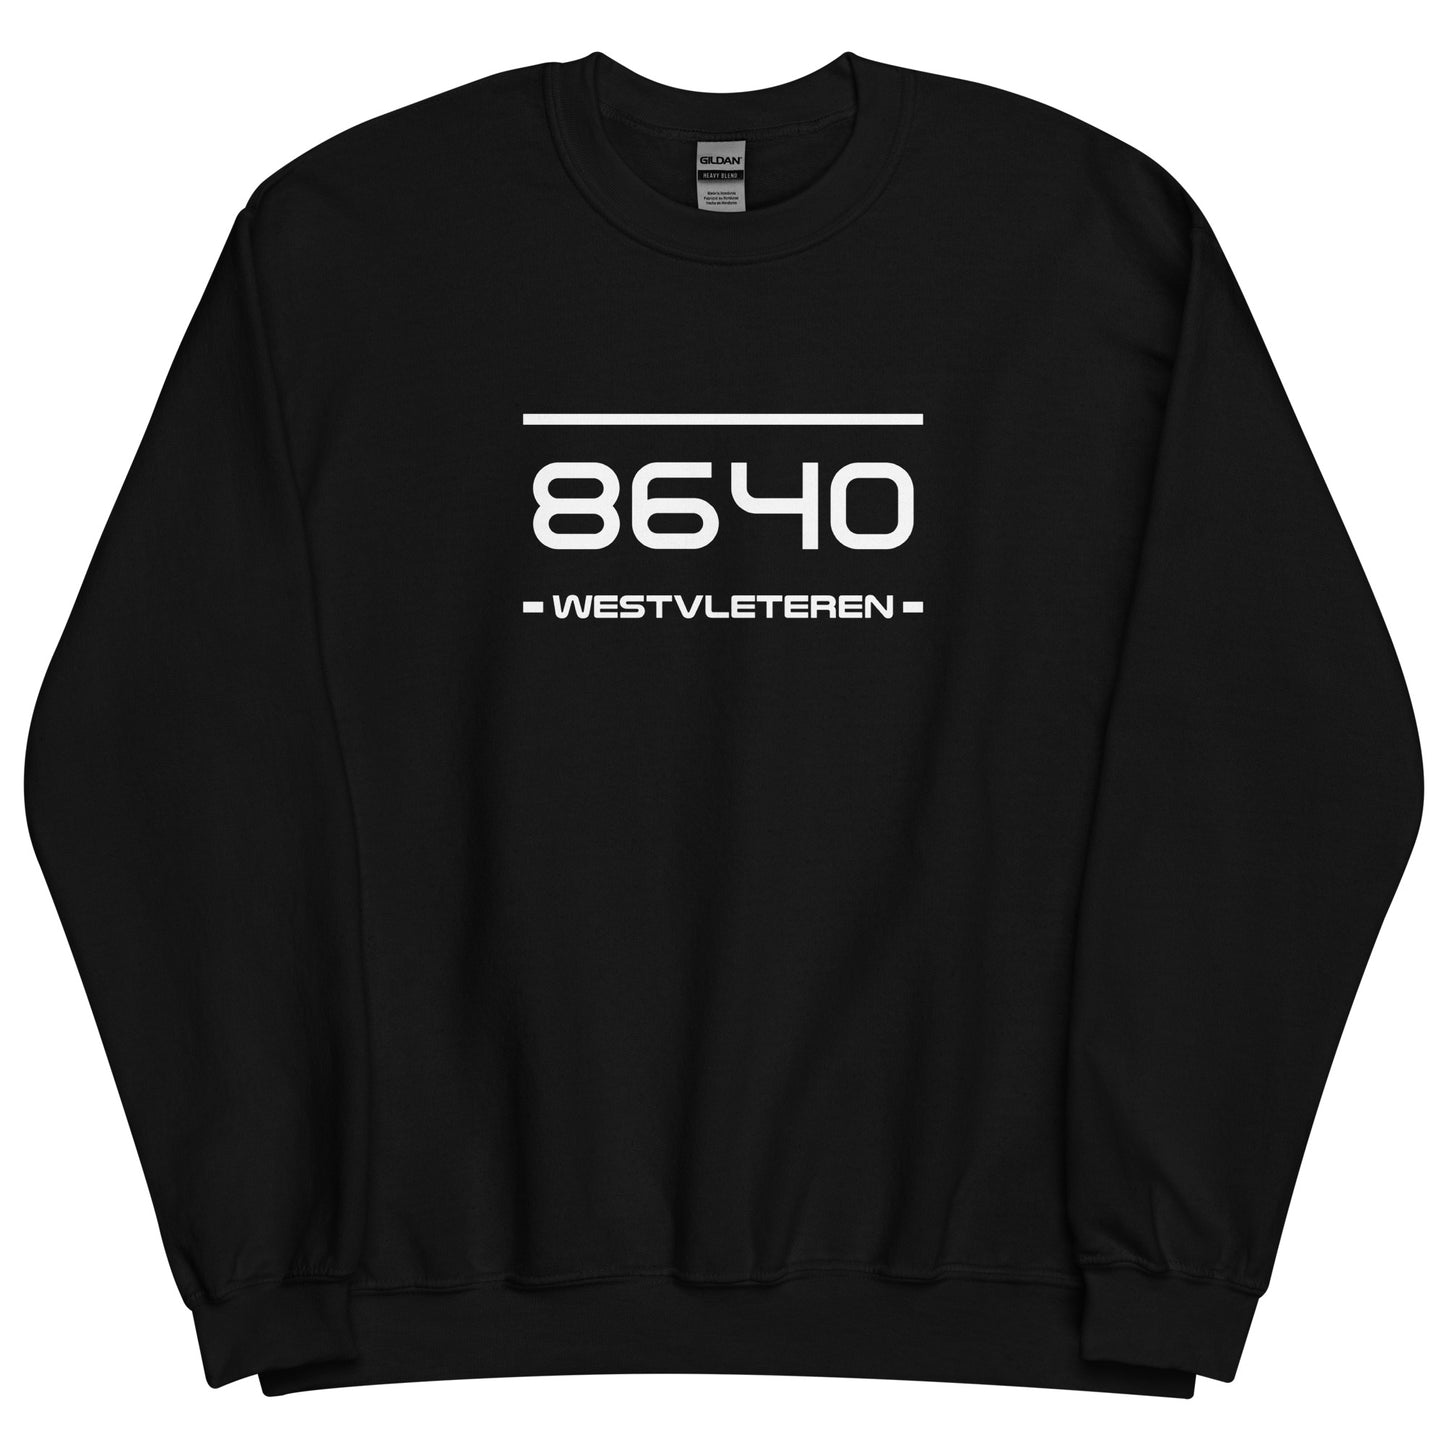 Sweater - 8640 - Westvleteren (M/V)